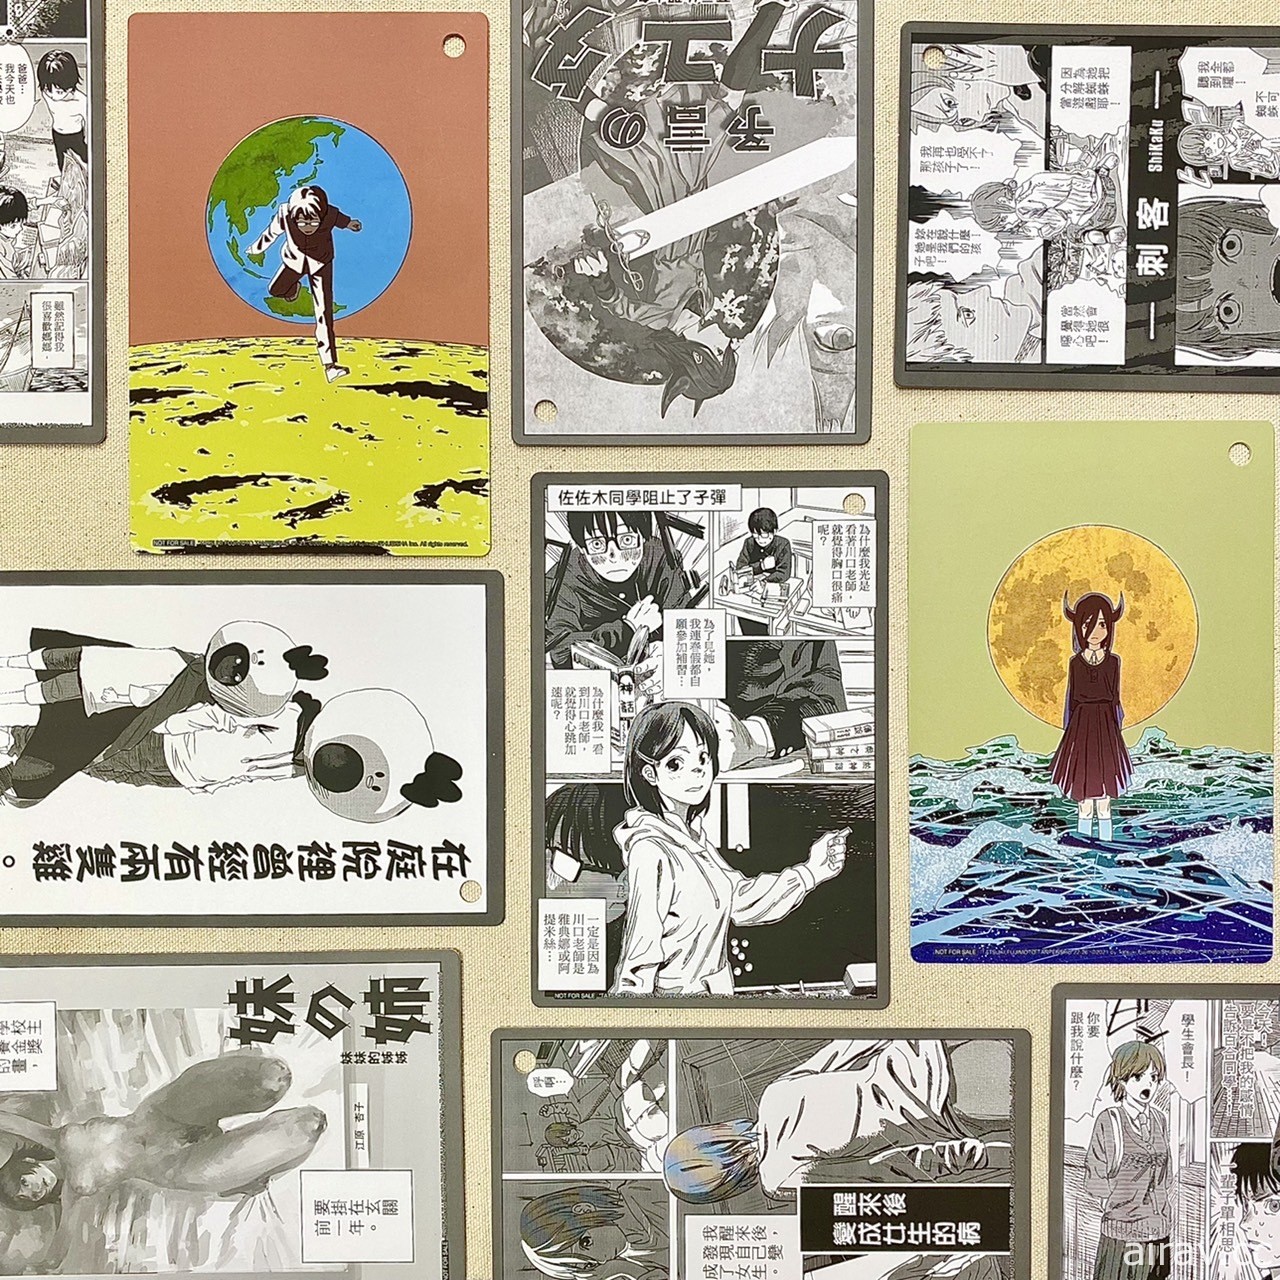 【漫博 22】东立出版社公布 2022 年漫画博览会主打书籍资讯